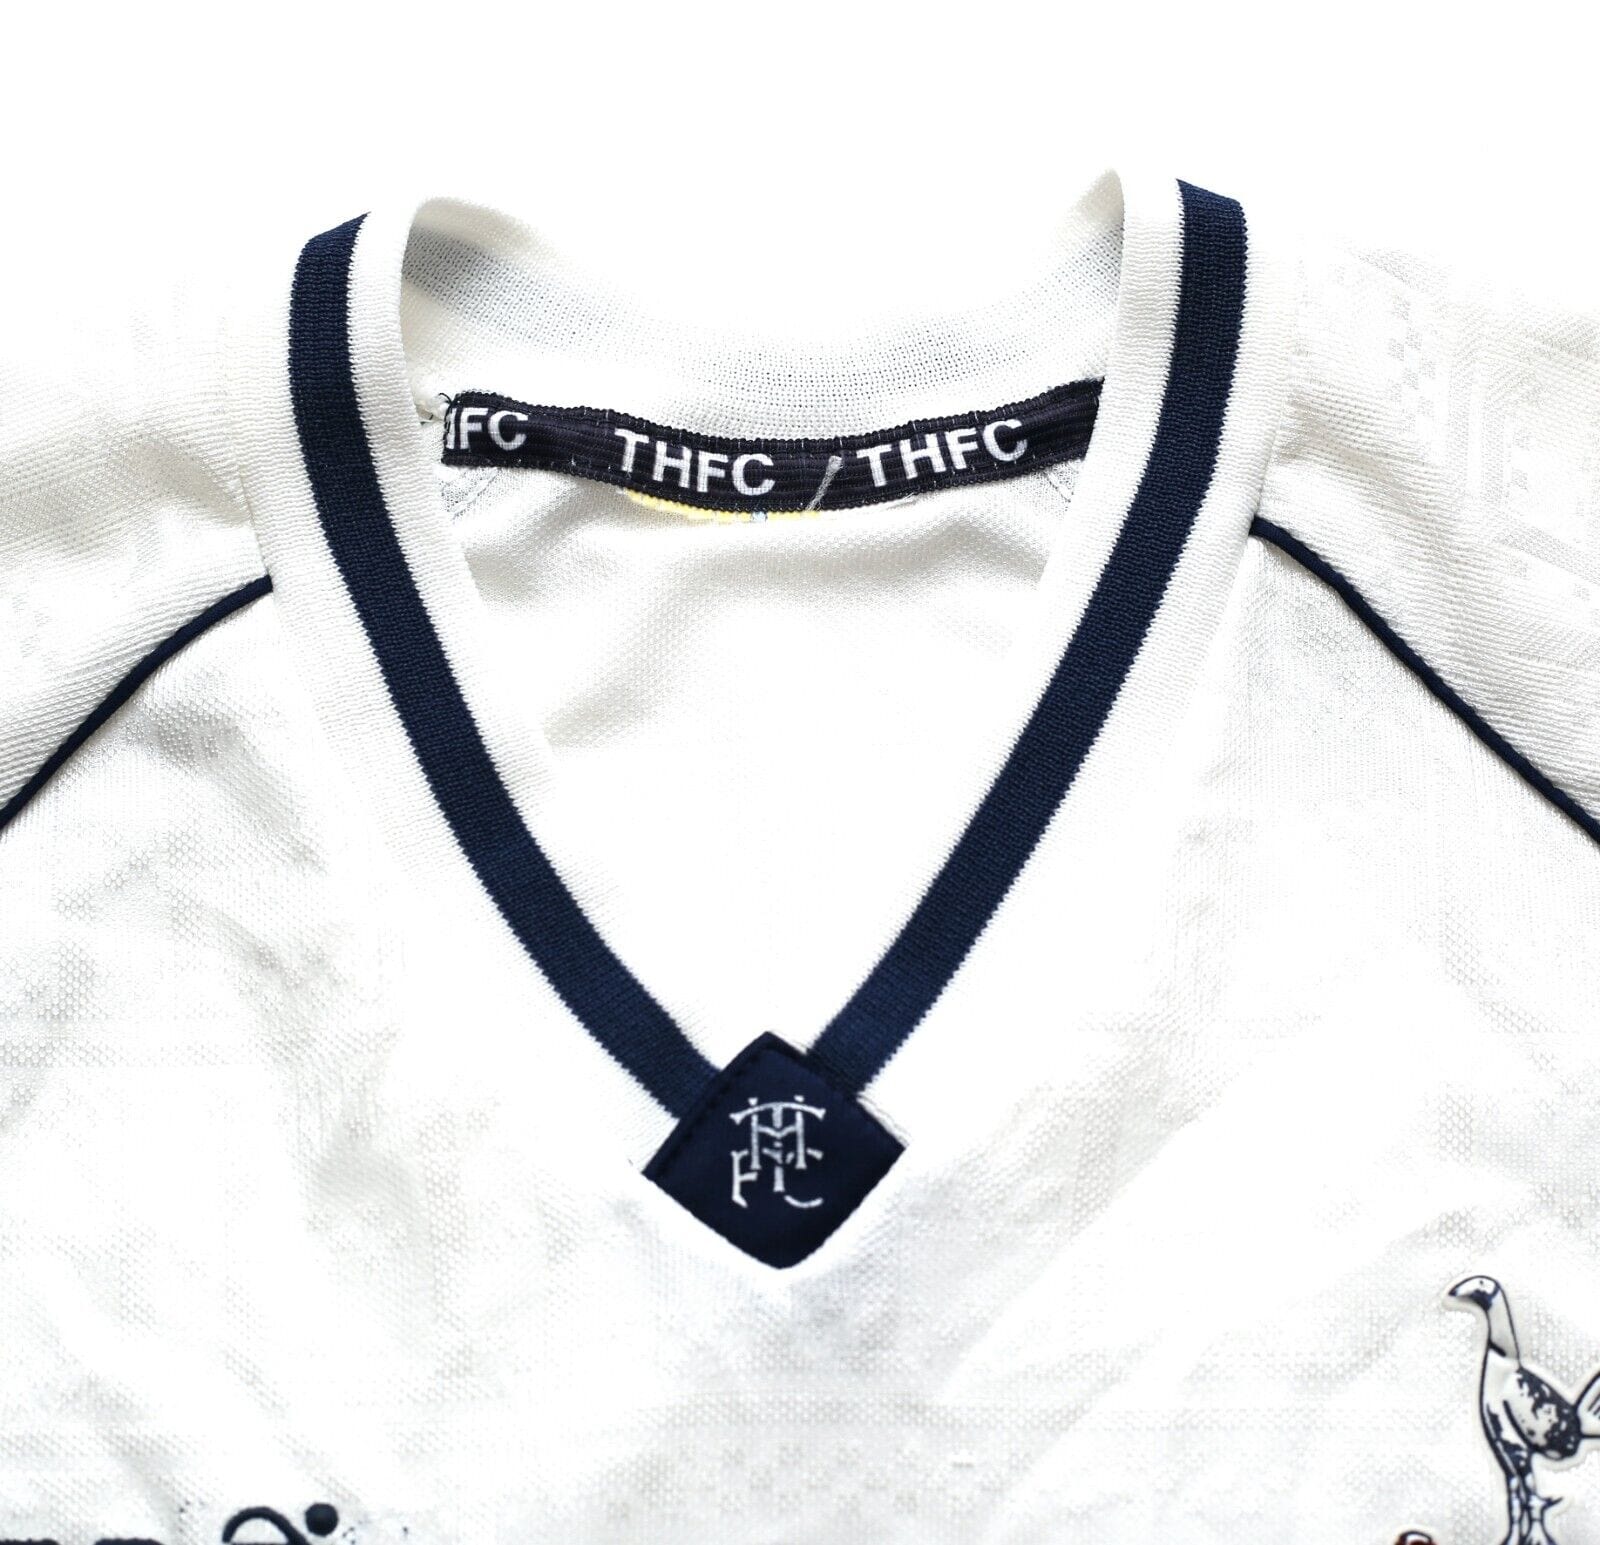 Vintage Tottenham Hotspur 1989 1990 1991 Hummel Home Shirt Home Jersey  Soccer